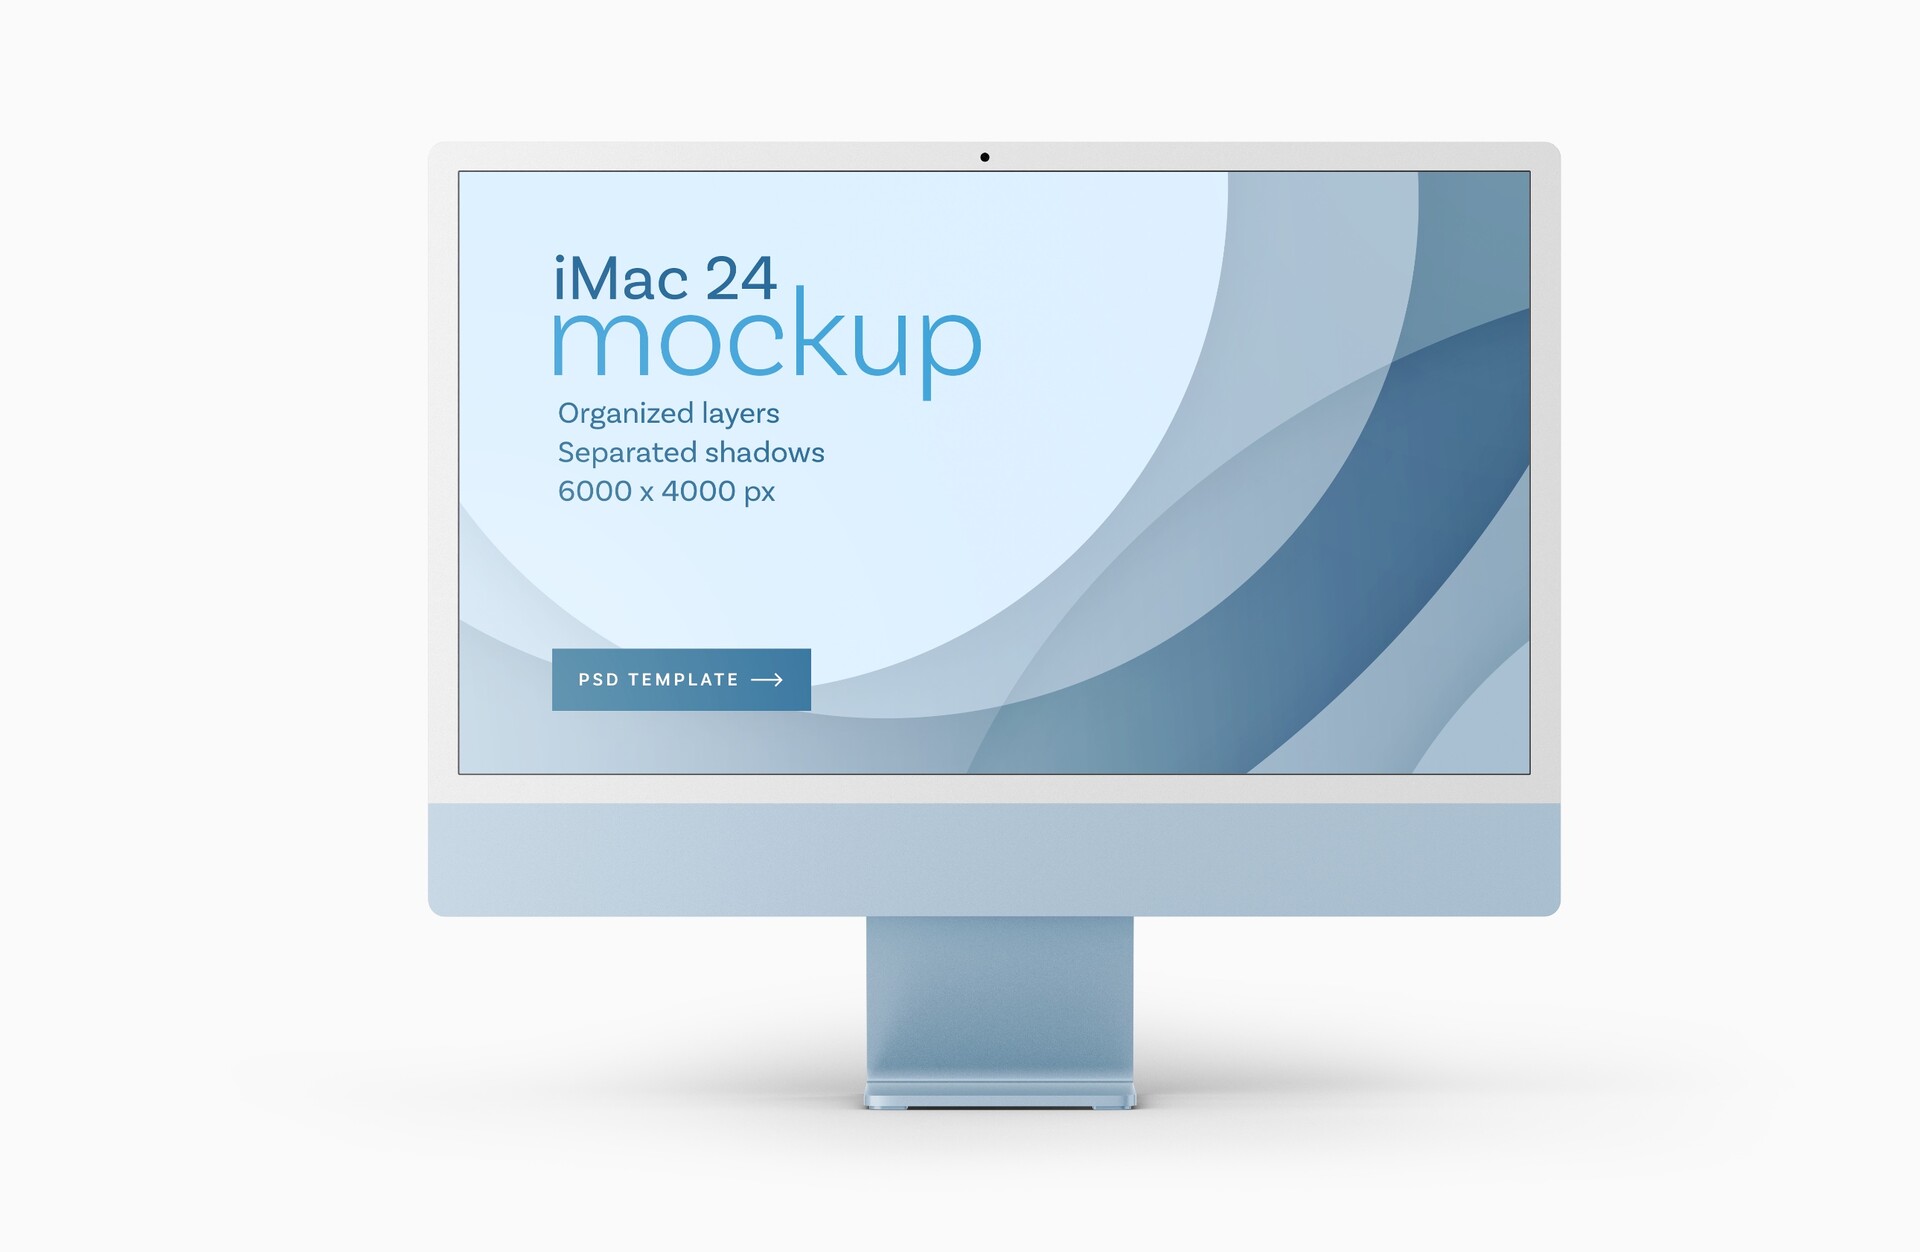 全新 iMac 24 英寸样机套装 | 2021年